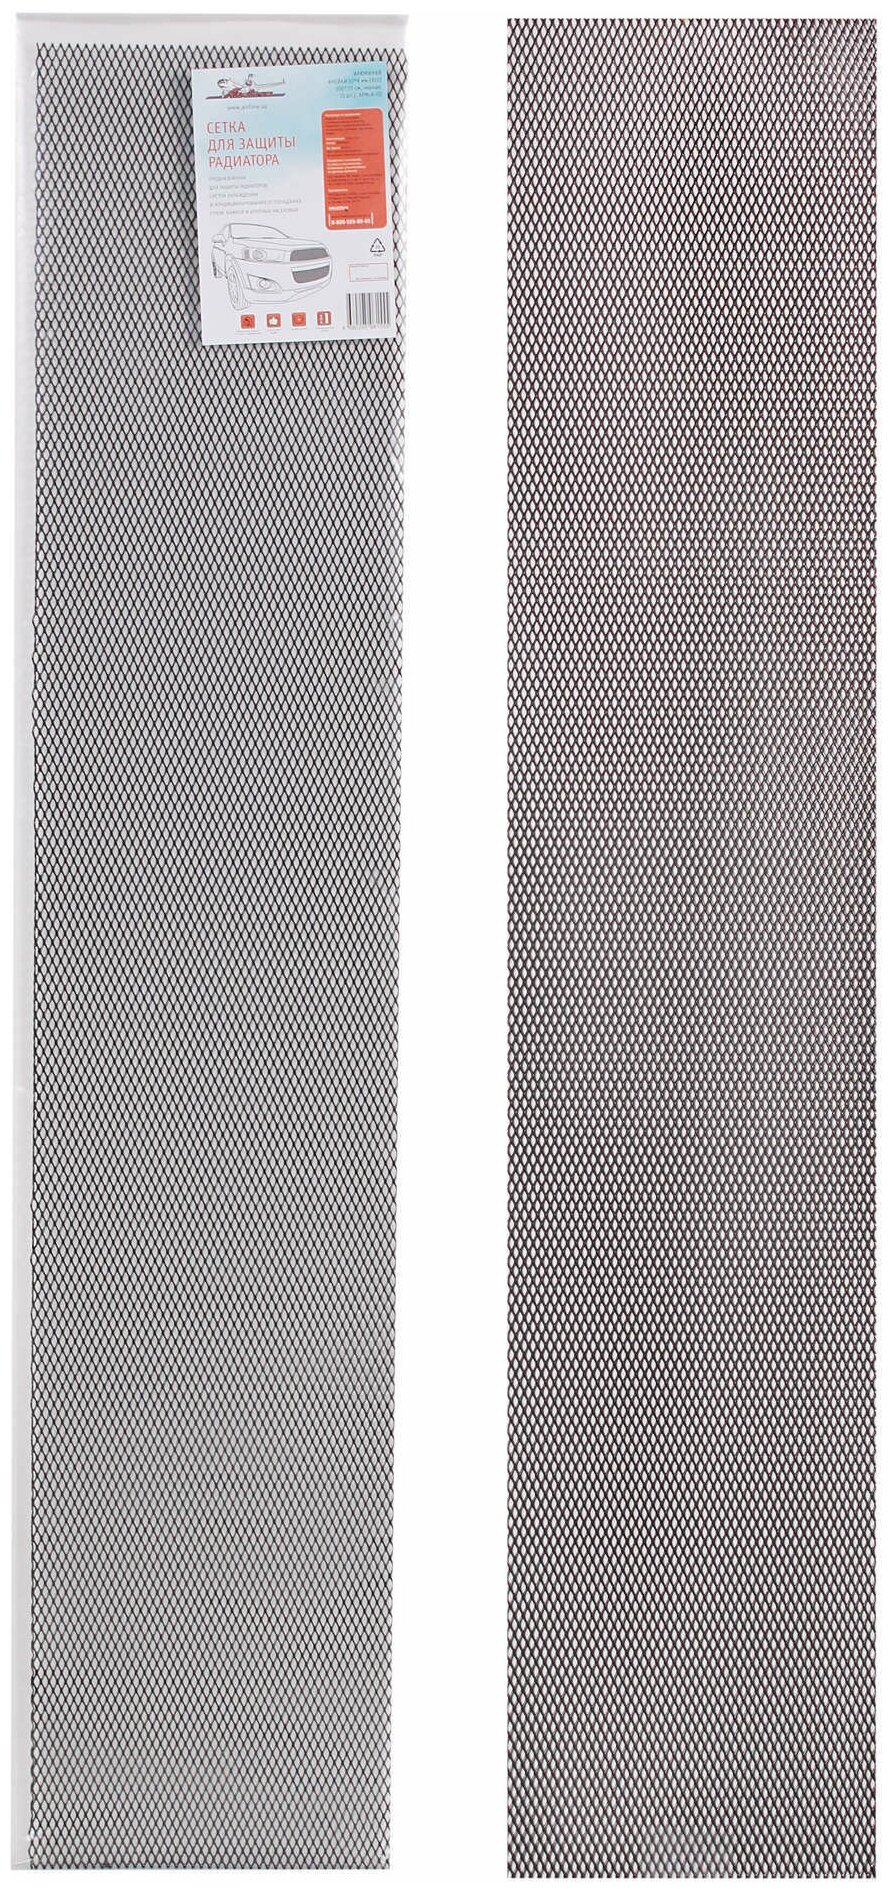 Сетка для защиты радиатора, алюм, яч. 10*4 мм (R10), 100*20 см, черная (1 шт.) (APM-A-02)